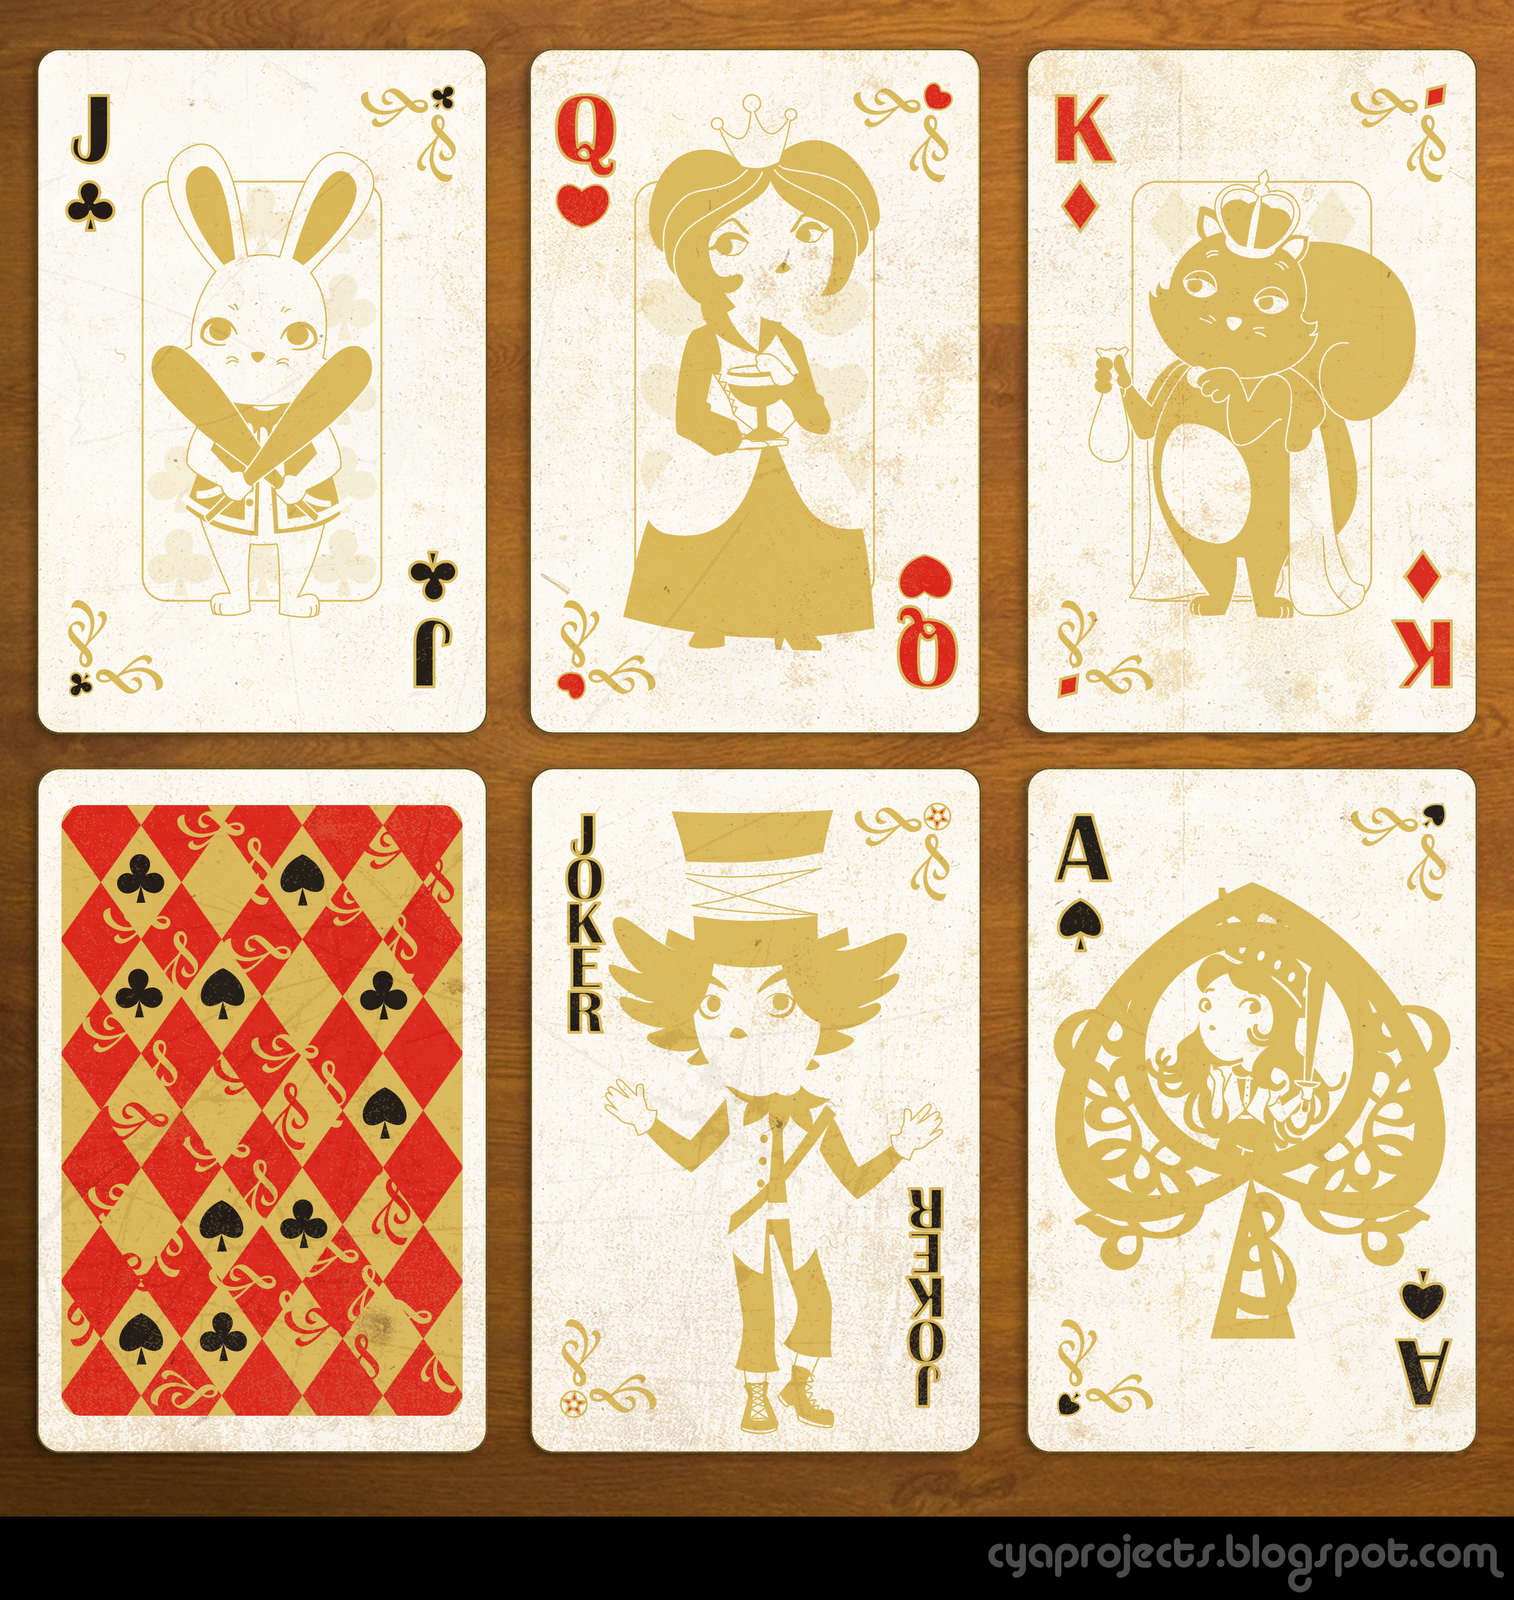 Как играть в карты с алисой. Карты Алиса в стране чудес. Колода карт из Алисы в стране чудес. Карты в стиле Алиса в стране чудес. Карты из Алисы в стране чудес.